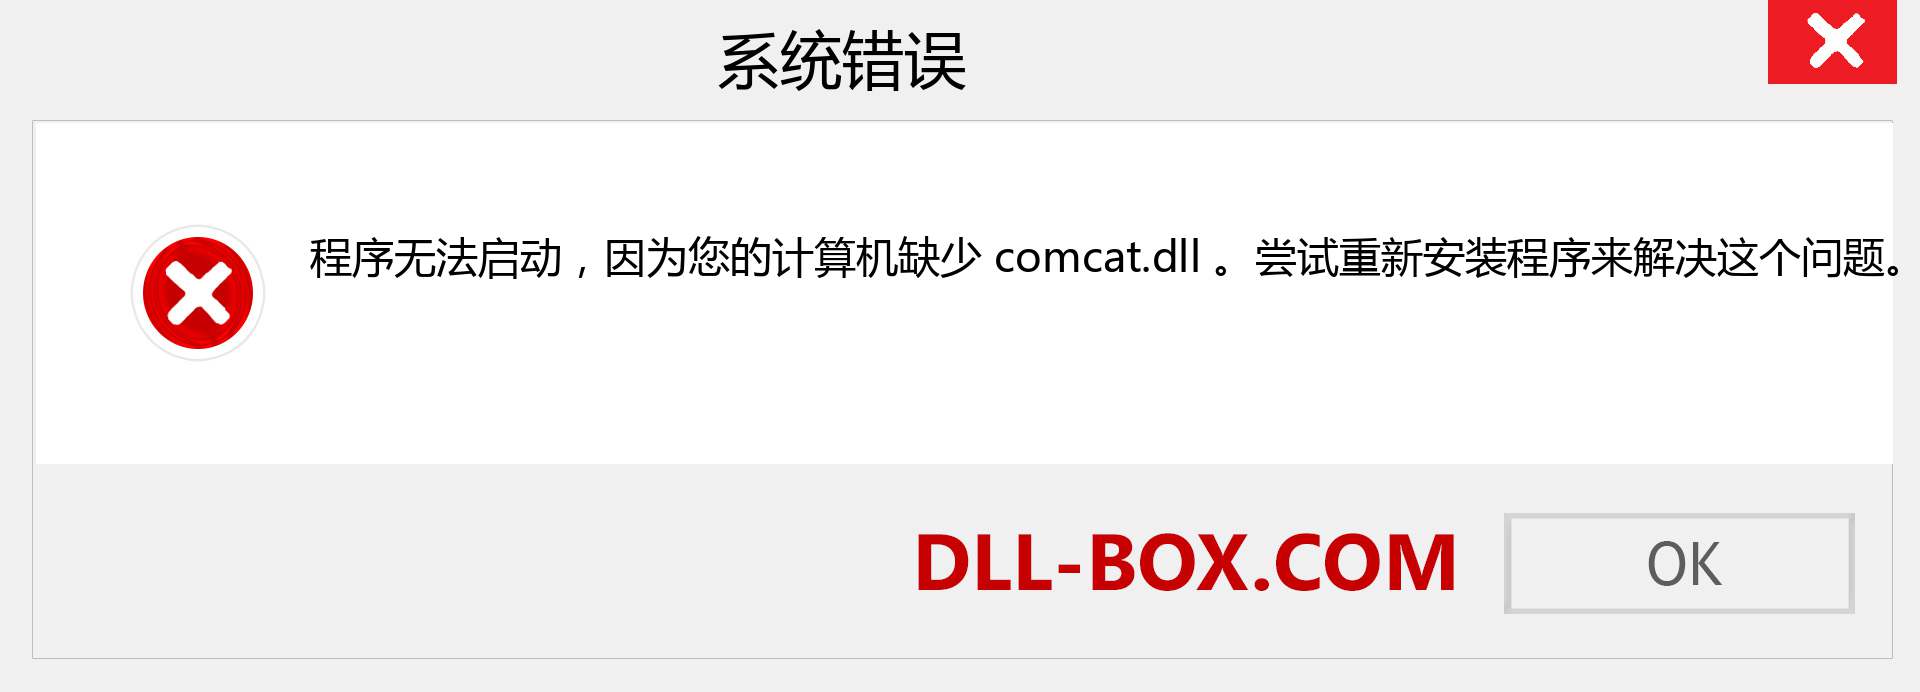 comcat.dll 文件丢失？。 适用于 Windows 7、8、10 的下载 - 修复 Windows、照片、图像上的 comcat dll 丢失错误